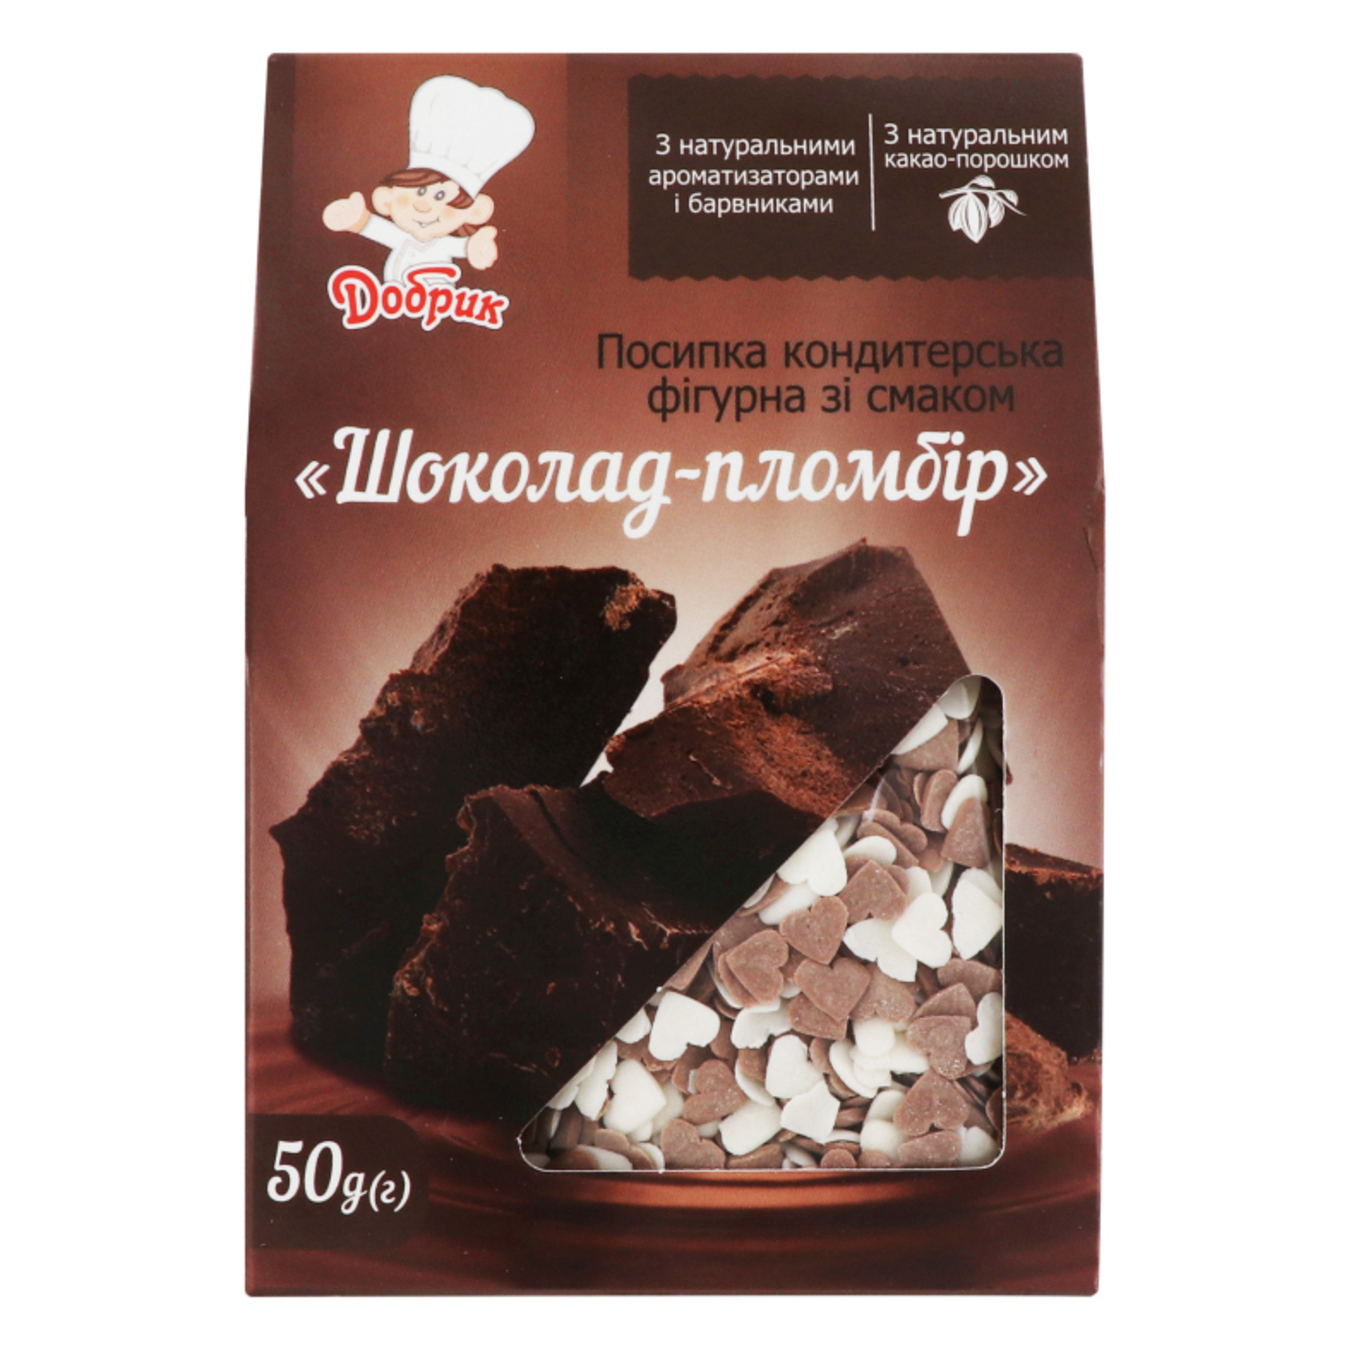 Посипка кондитерська Добрик фігурна зі смаком Шоколад-пломбір 50г